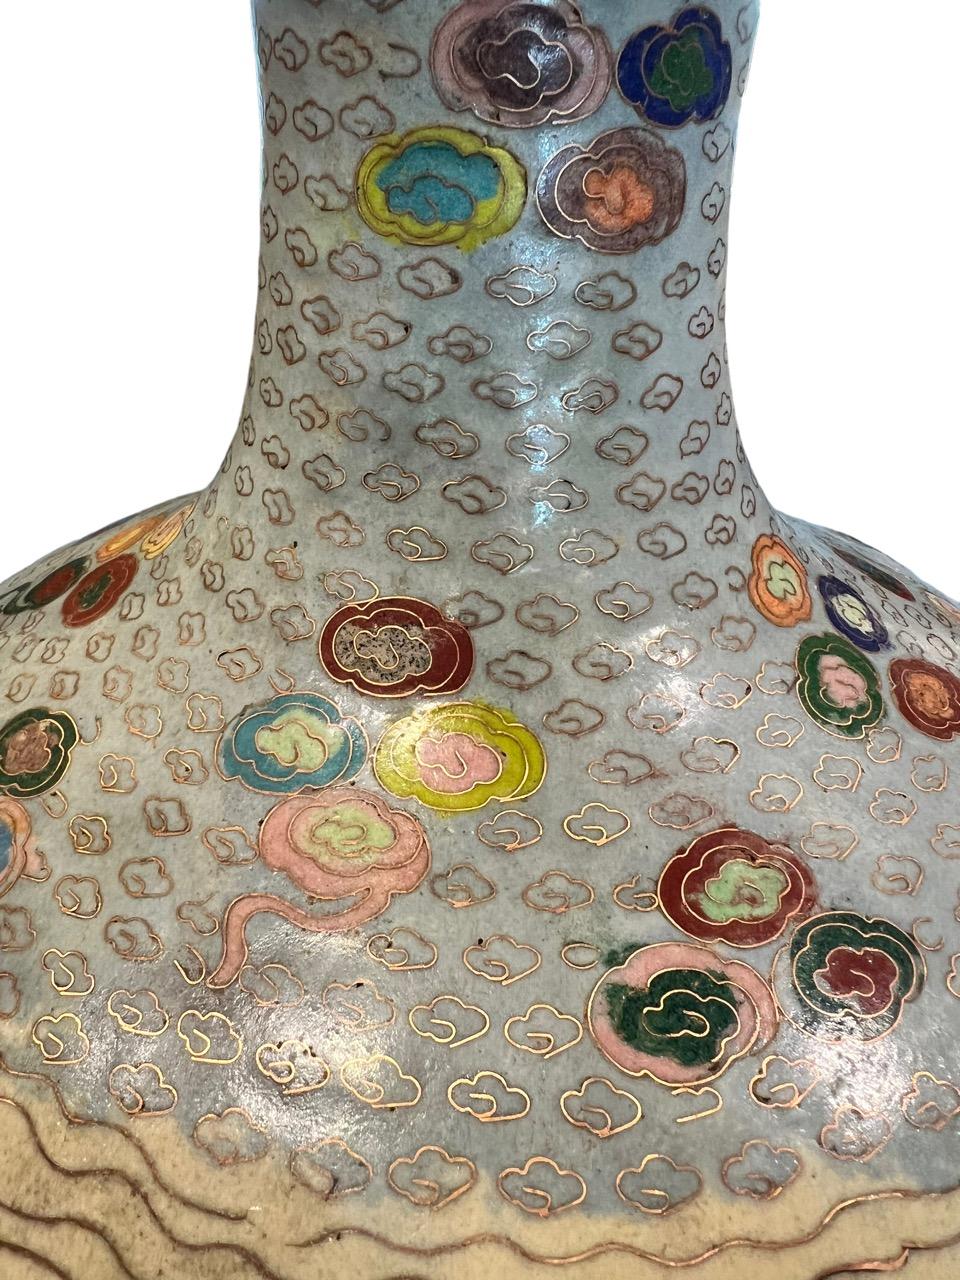 Paire de vases en porcelaine émaillée cloisonnée datant du début du 20e siècle (années 1900). 11